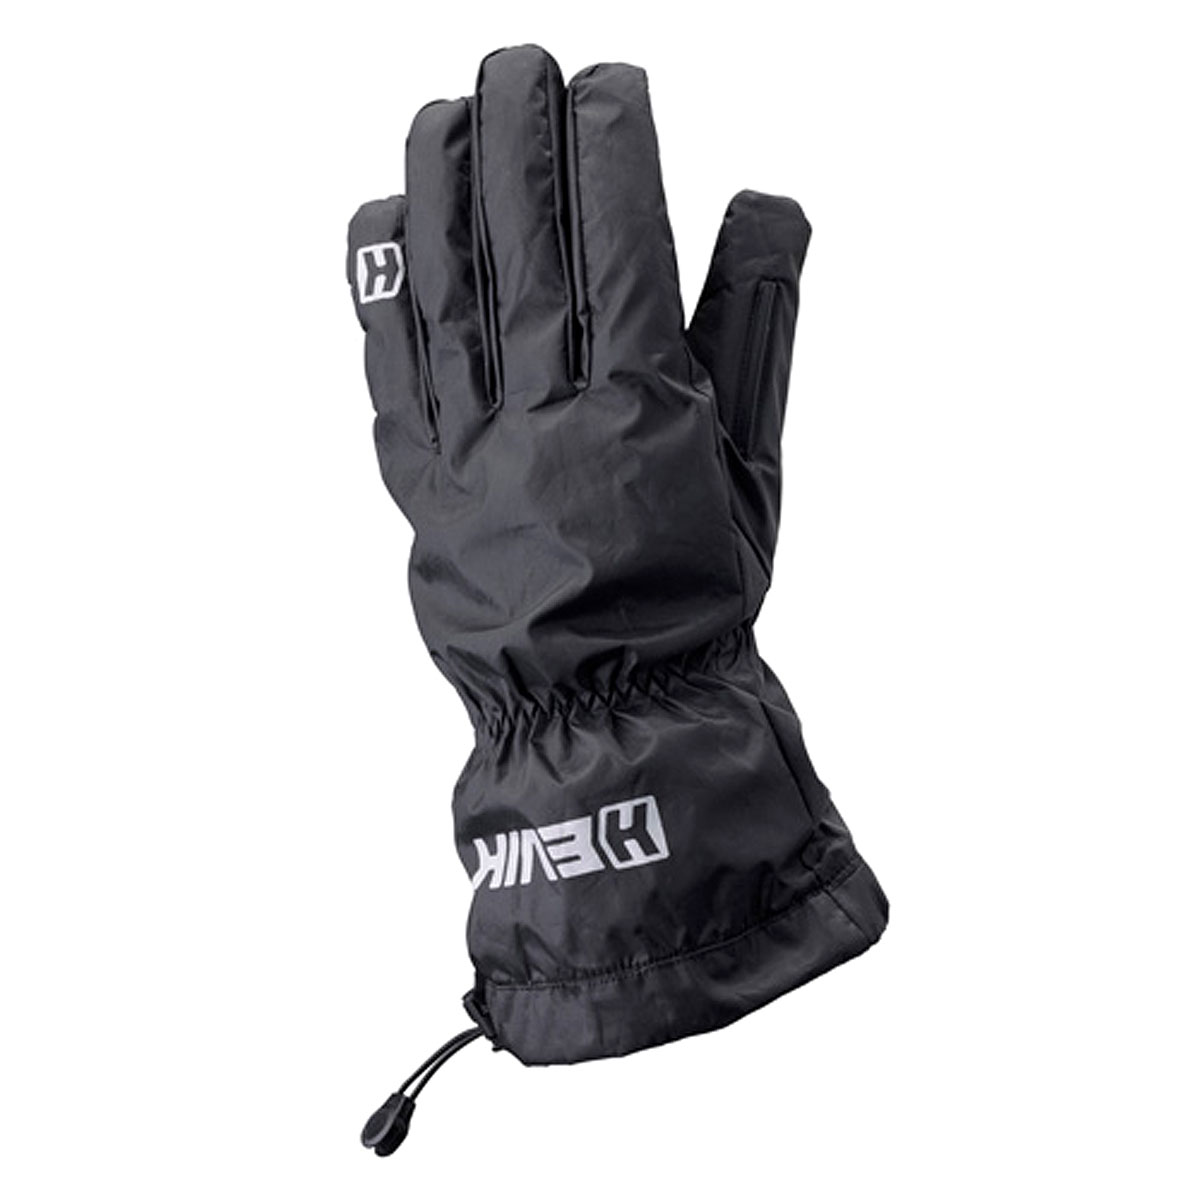 Hevik Moto Motorcycle Bike Universal Winter Waterproof Over Gloves Black eBay